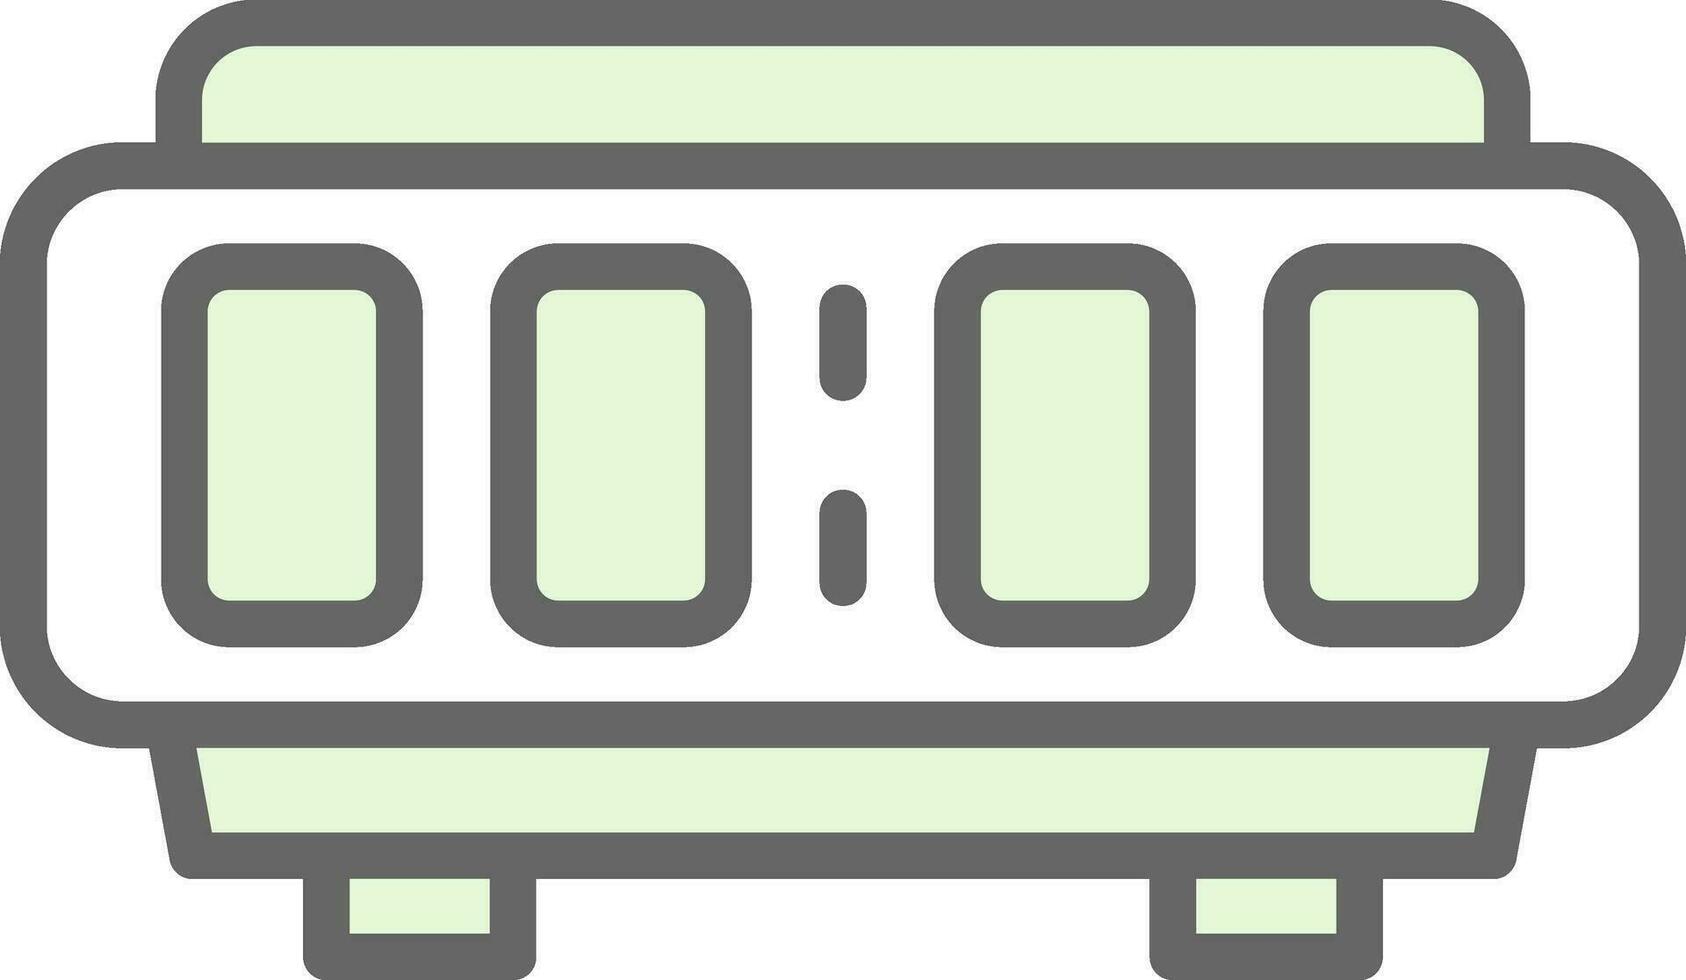 Digital Alarm Clock  Vector Icon Design